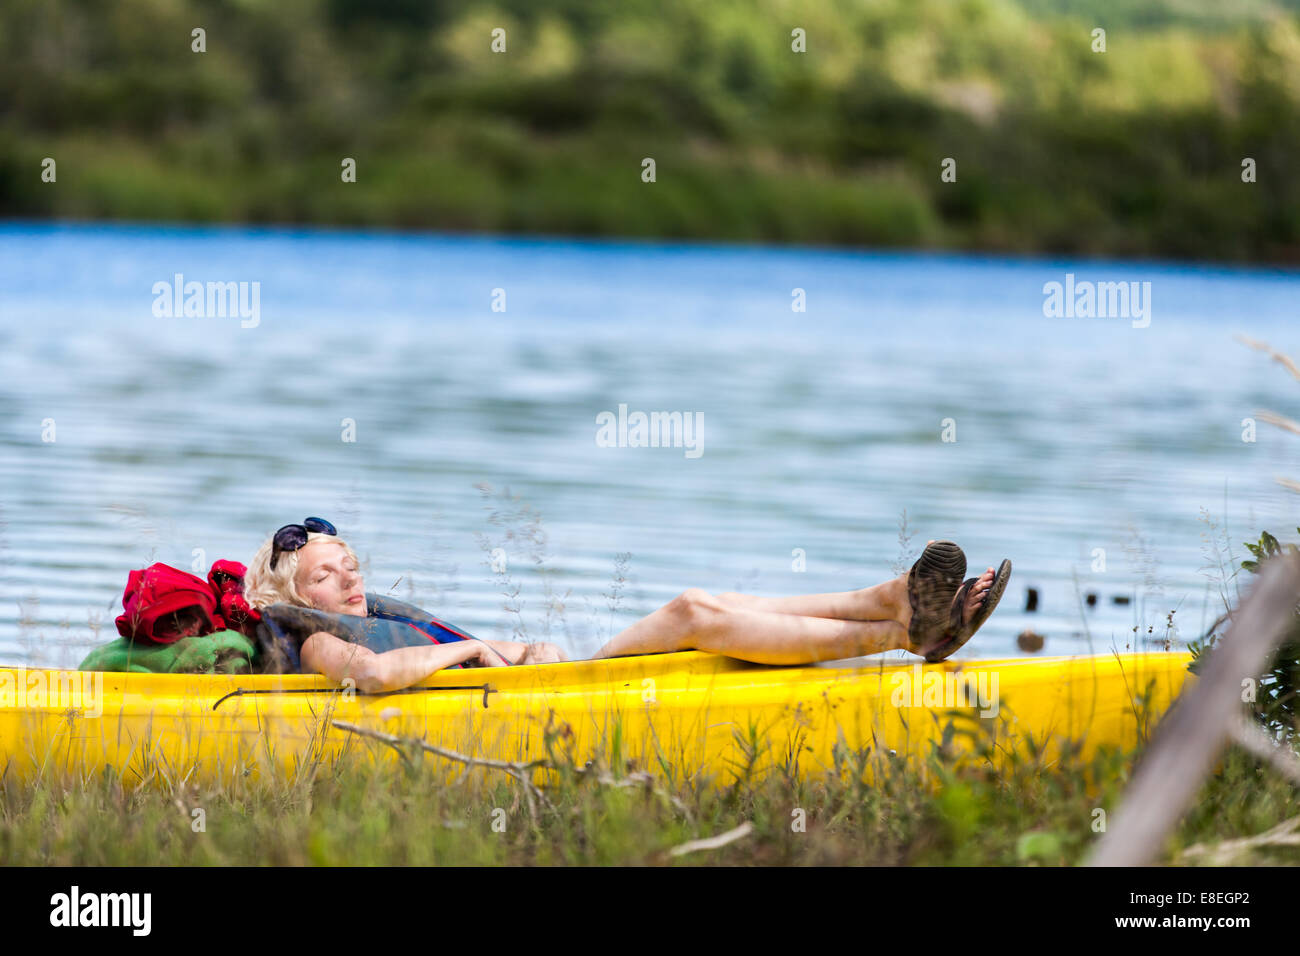 Stanco donna che dorme in un kayak giallo Foto Stock